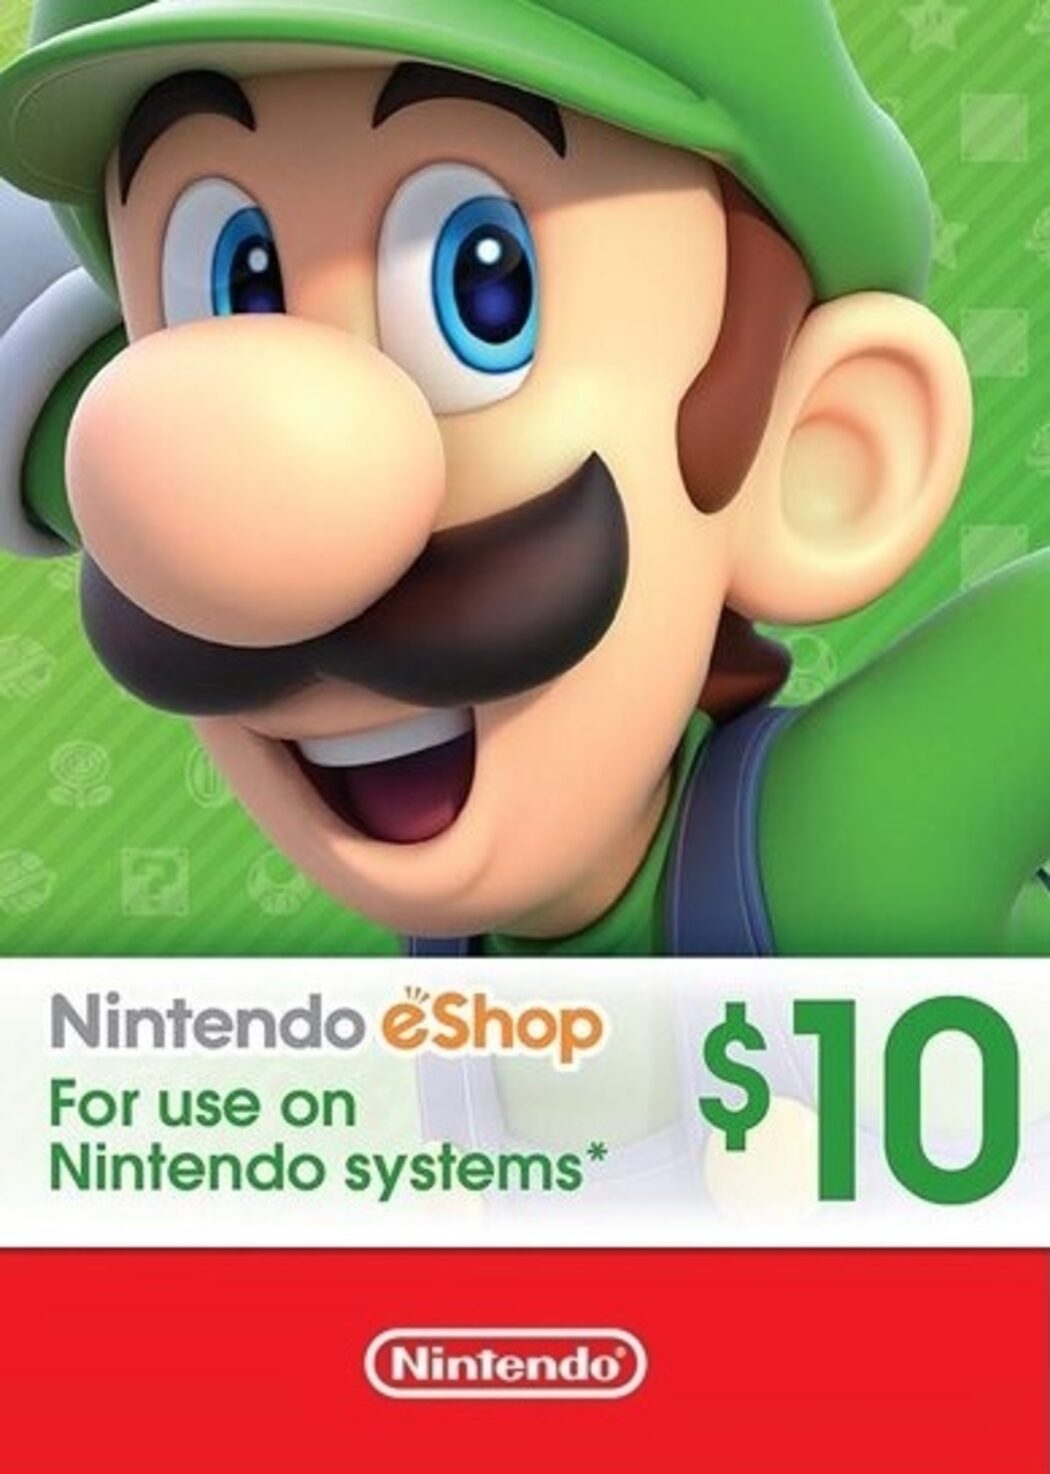 spiller Morgenøvelser At give tilladelse Buy Nintendo Switch gift card 10 USD key cheaper! Visit | ENEBA